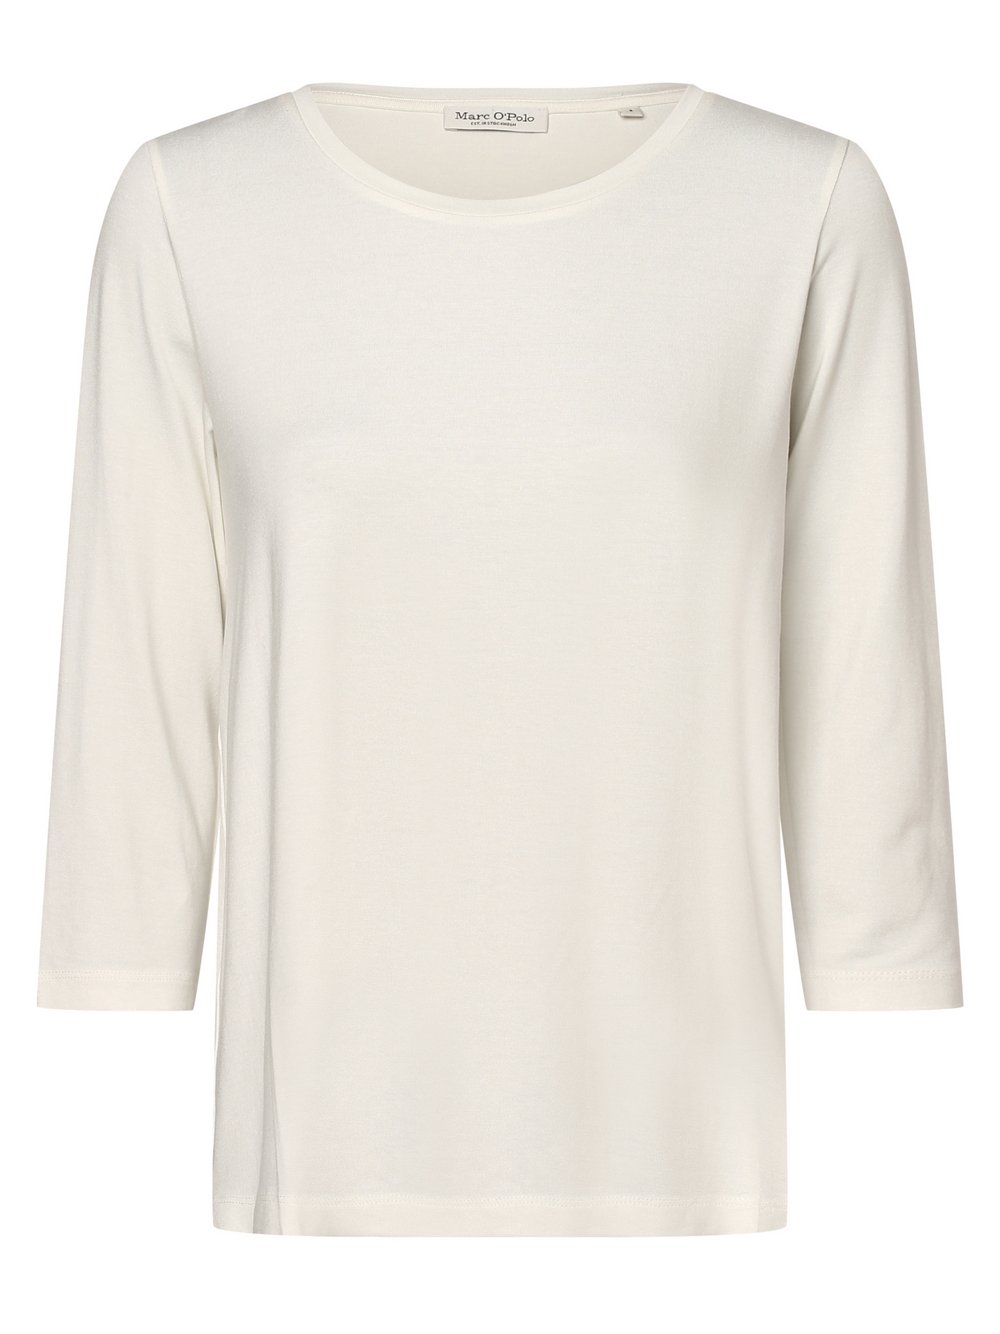 Marc O'Polo - Damska koszulka z długim rękawem, biały